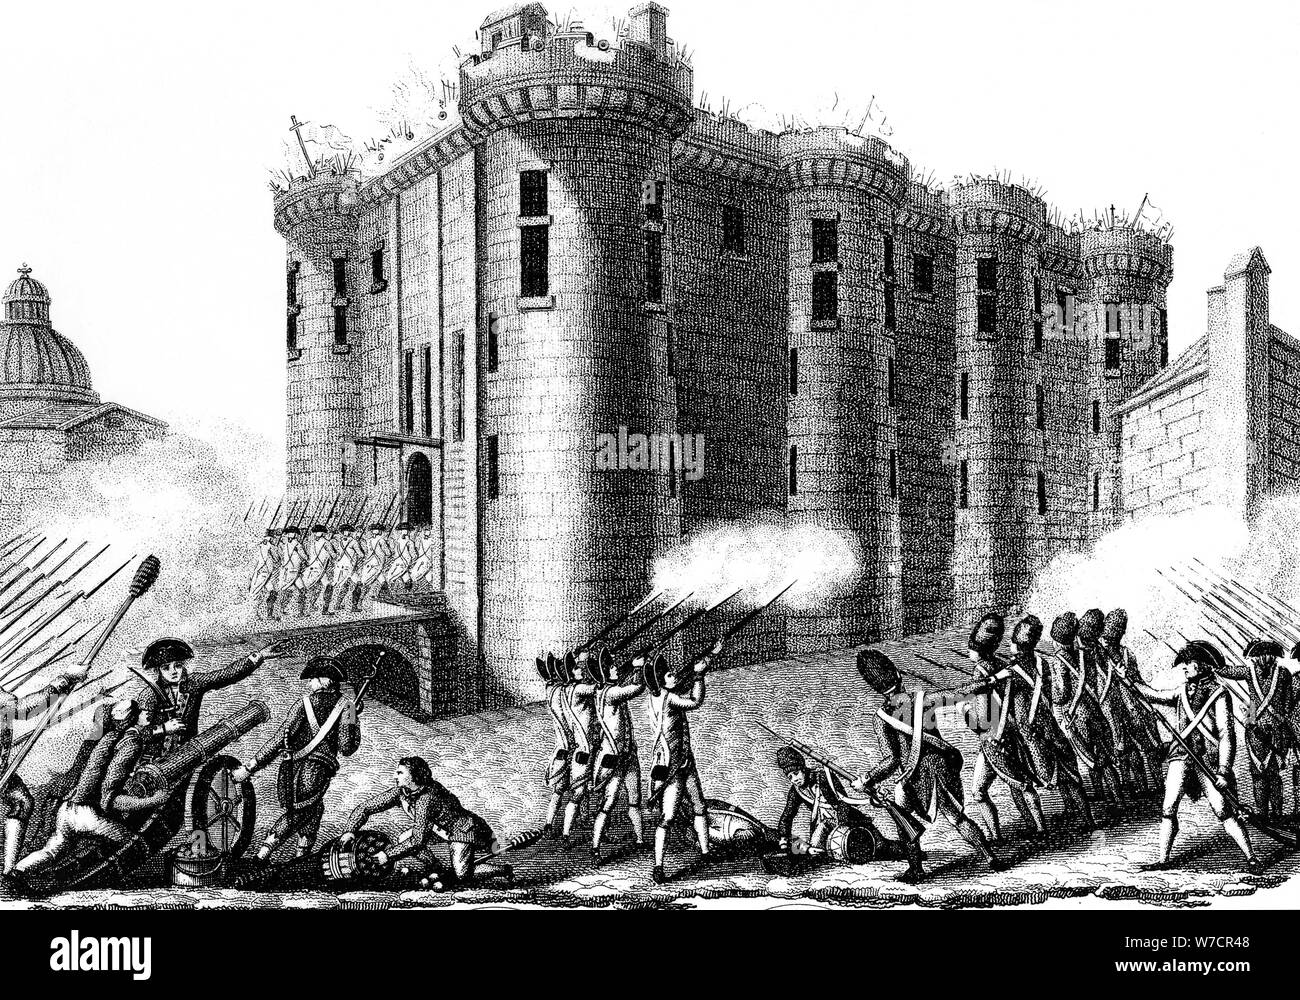 El asalto de la Bastilla por los parisinos liderados por los granaderos de la Guardia, 14 de julio de 1789 (1804). Artista: Desconocido Foto de stock